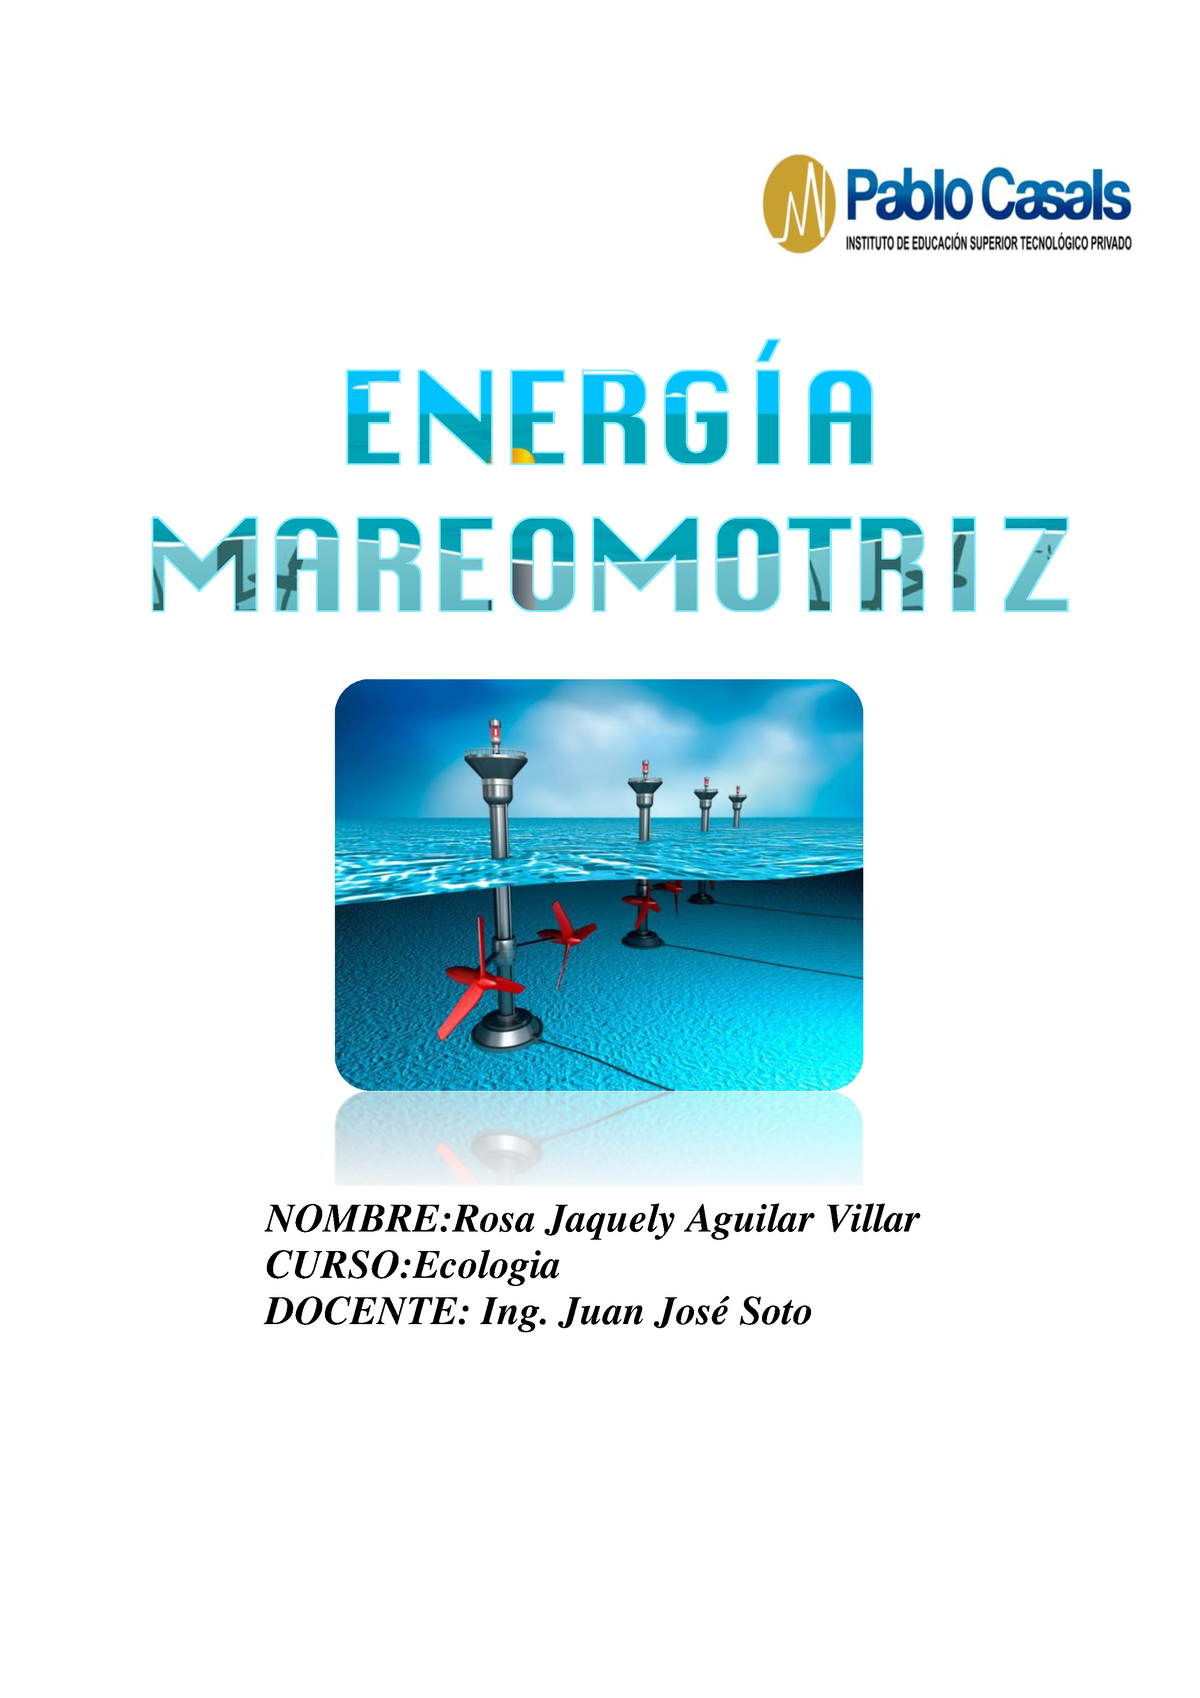 EnergíA Mareomotriz - dffghju - NOMBRE:Rosa Jaquely Aguilar Villar  CURSO:Ecologia DOCENTE: Ing. - Studocu